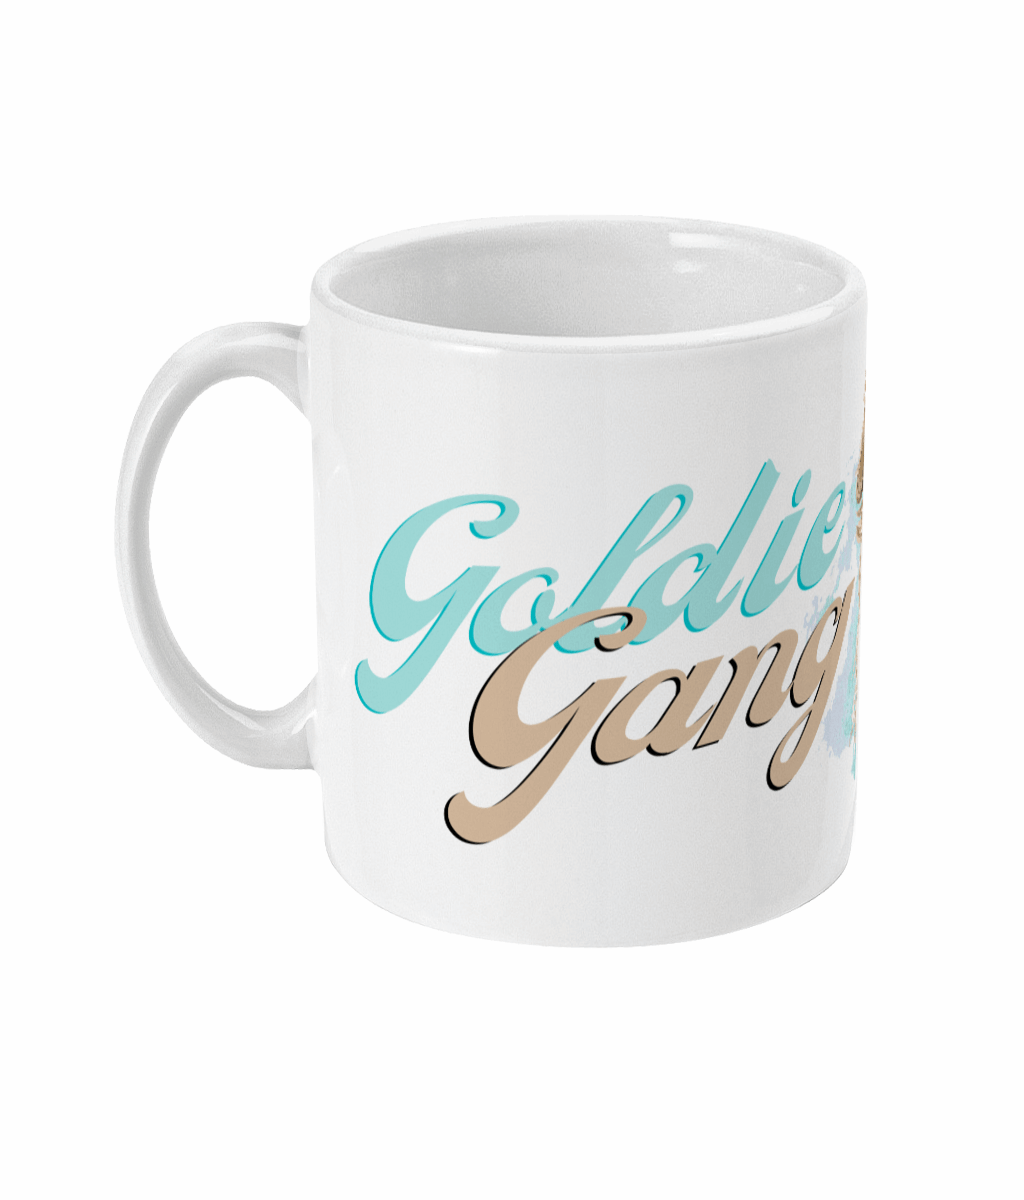  Goldie Gang Retriever Coffee Mug by Free Spirit Accessories sold by Free Spirit Accessories